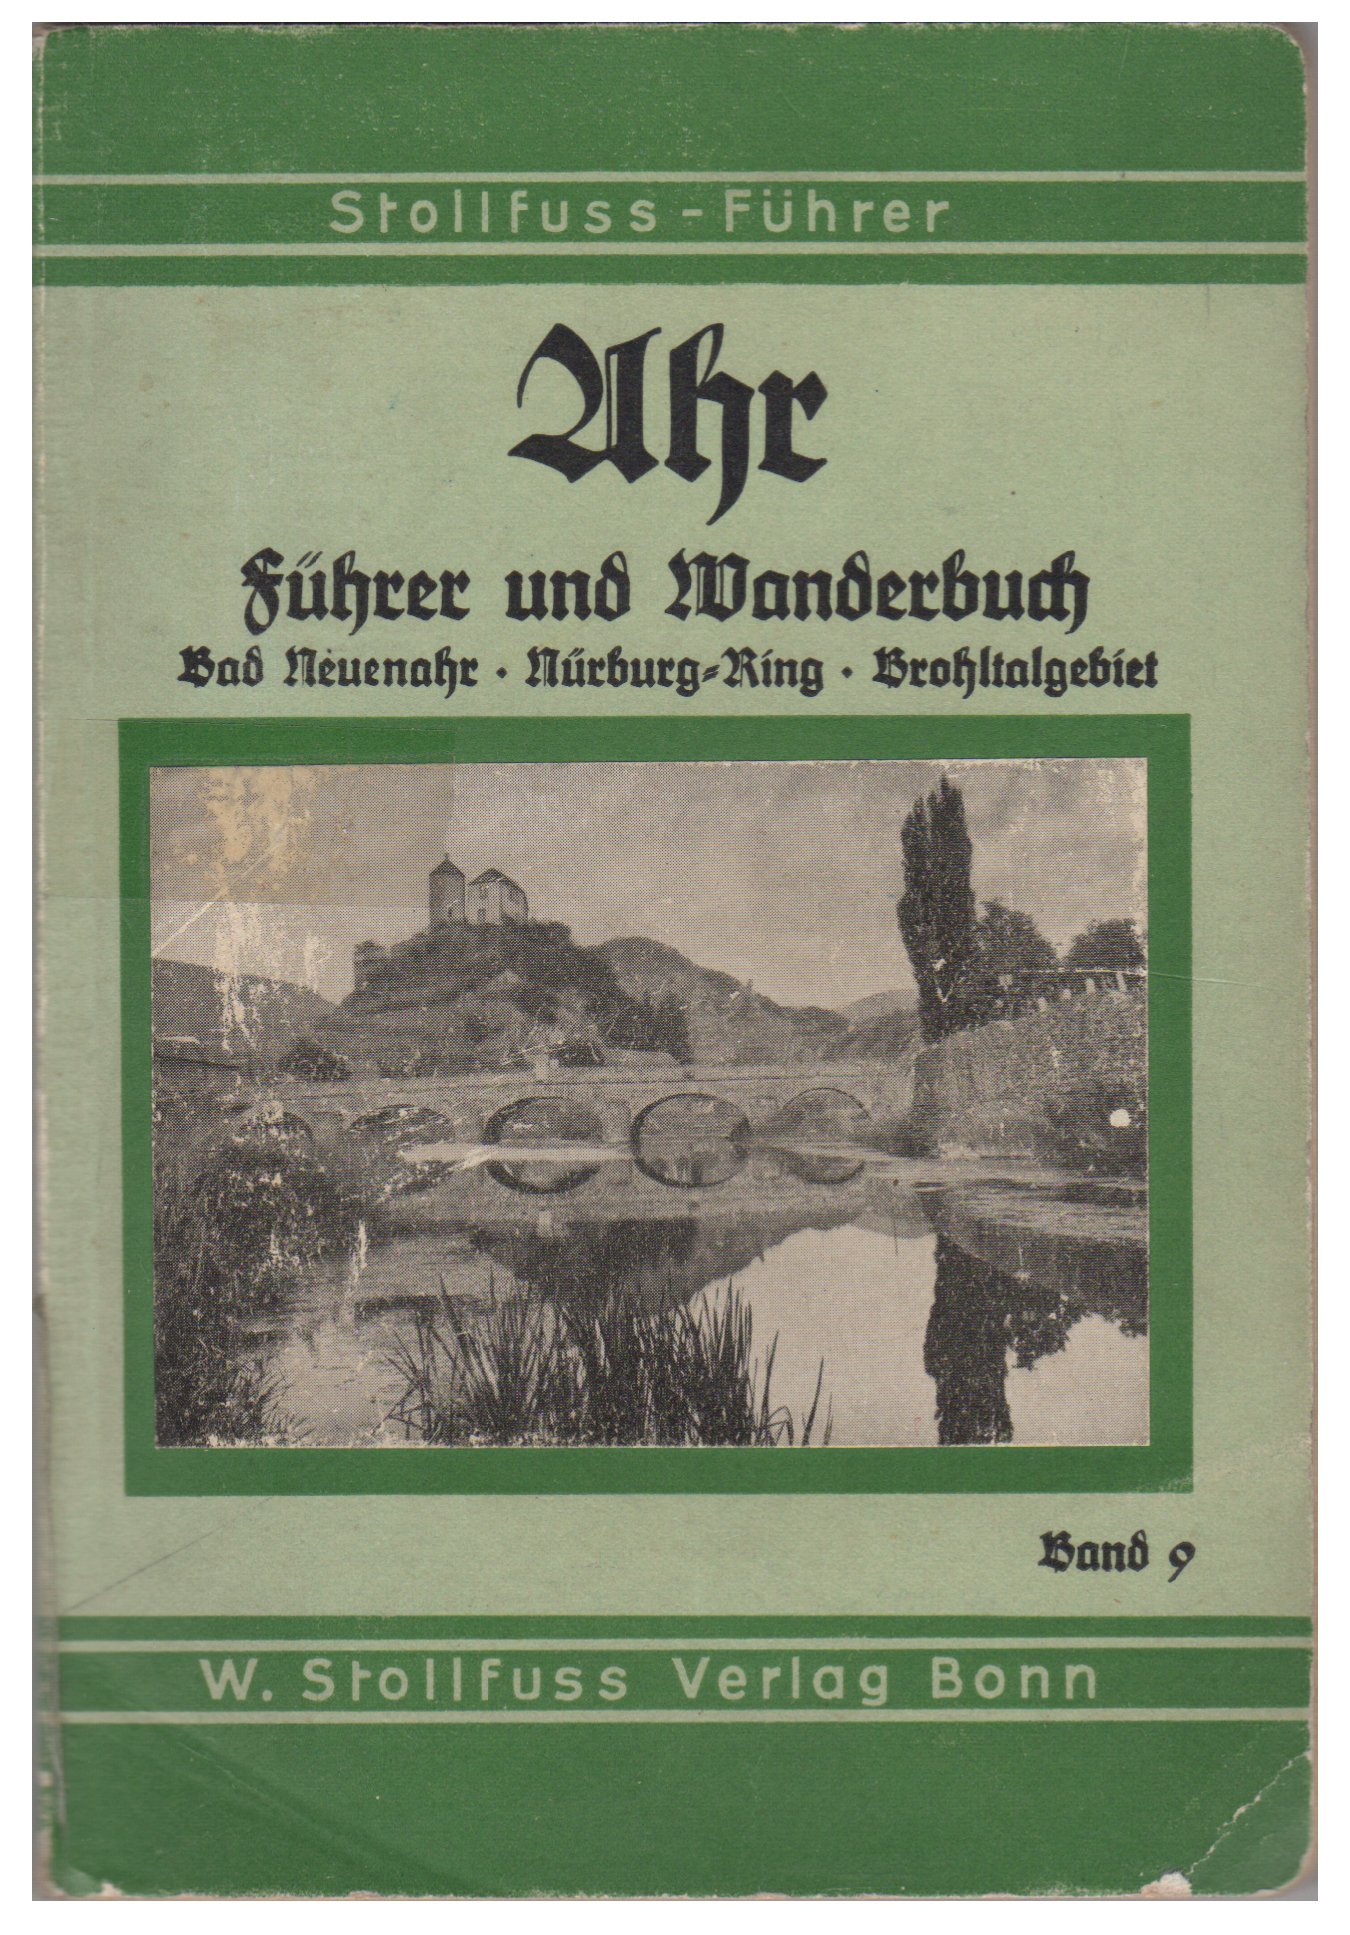 Ahr Führer und Wanderbuch Bad Neuenahr - Nürburg-Ring - Brohltalgebiet mit 2 Karten (Stofffuss Verlag, Bonn CC BY-NC-SA)